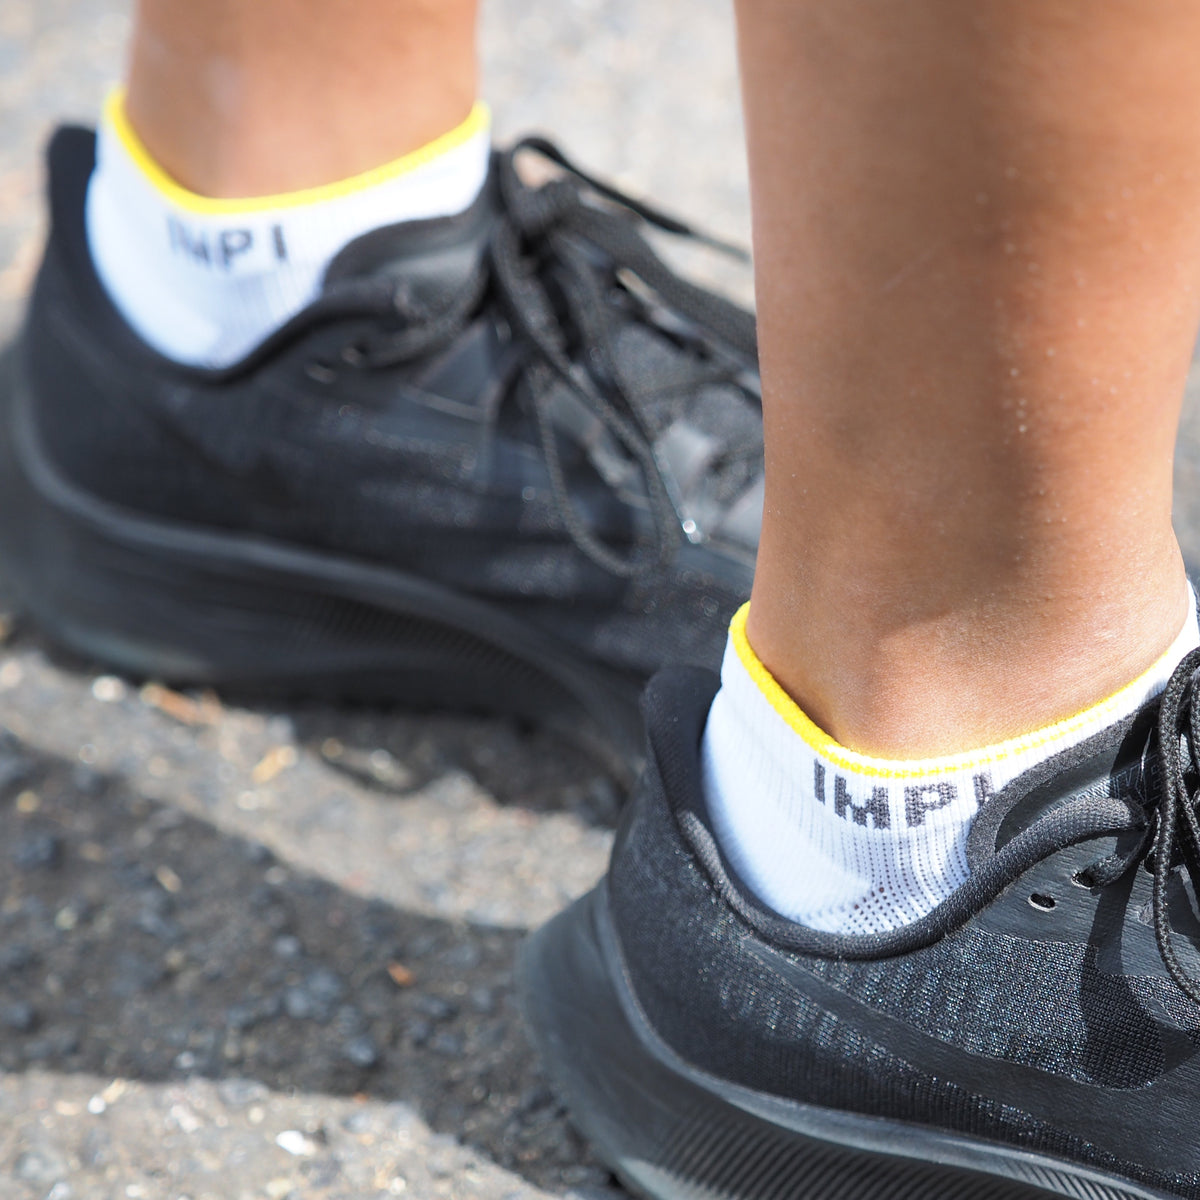 IMPI ankle socks